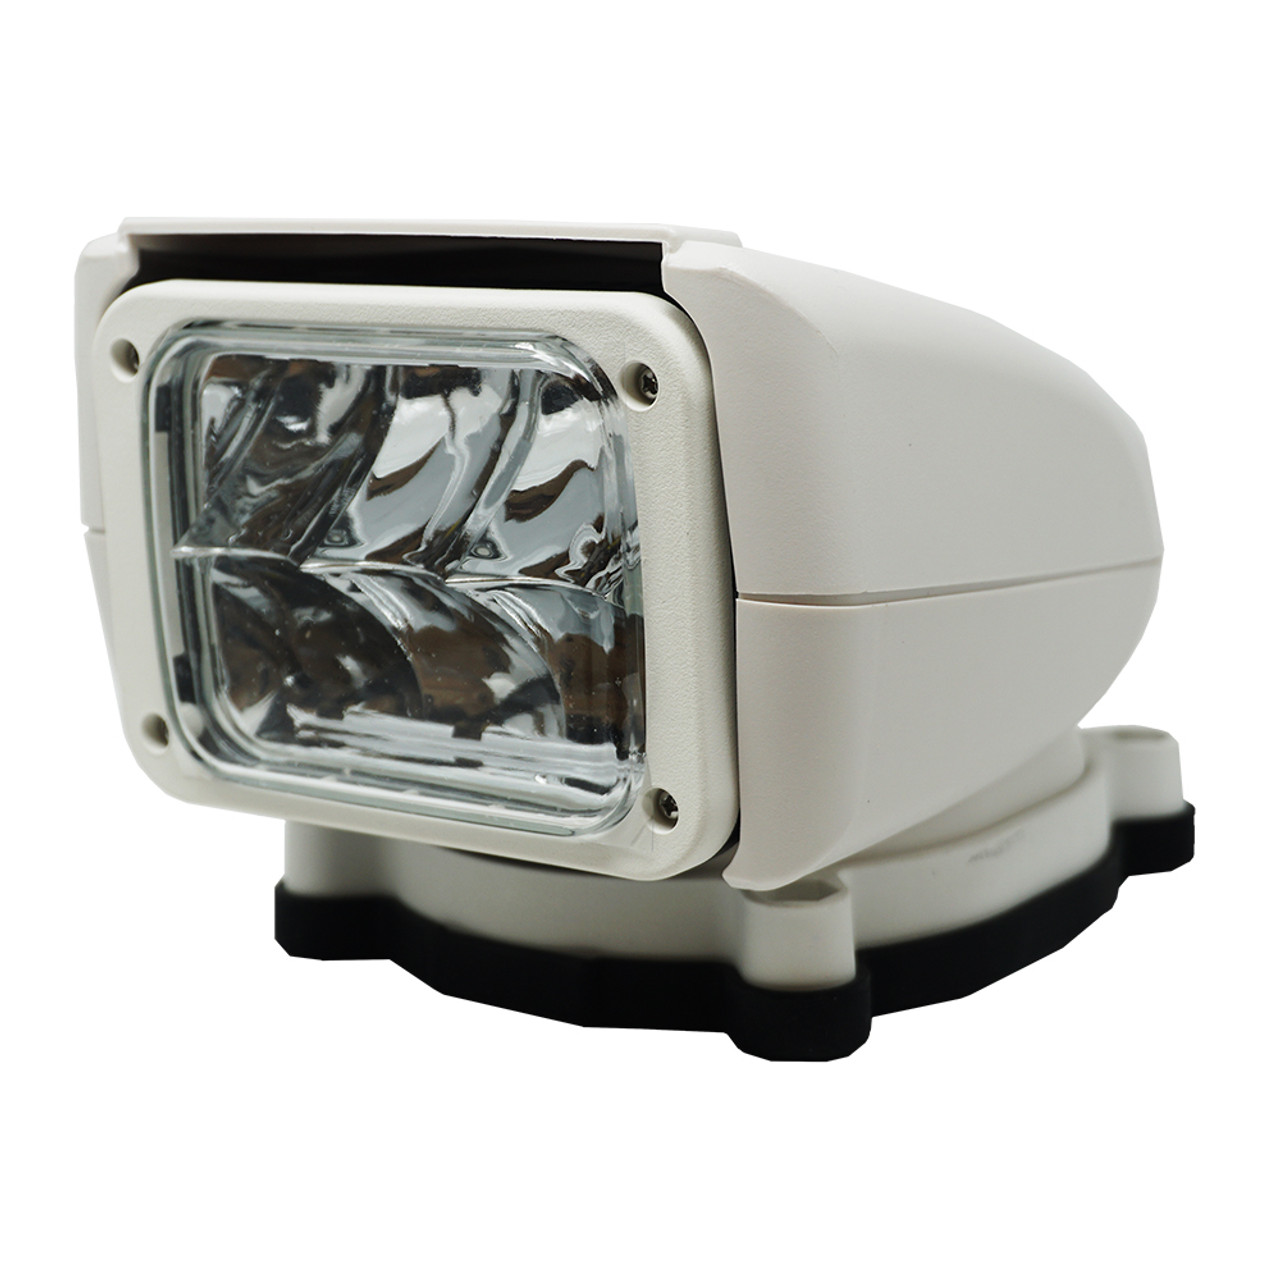 Acr rcl85 projecteur led blanc avec télécommande sans fil 240 000